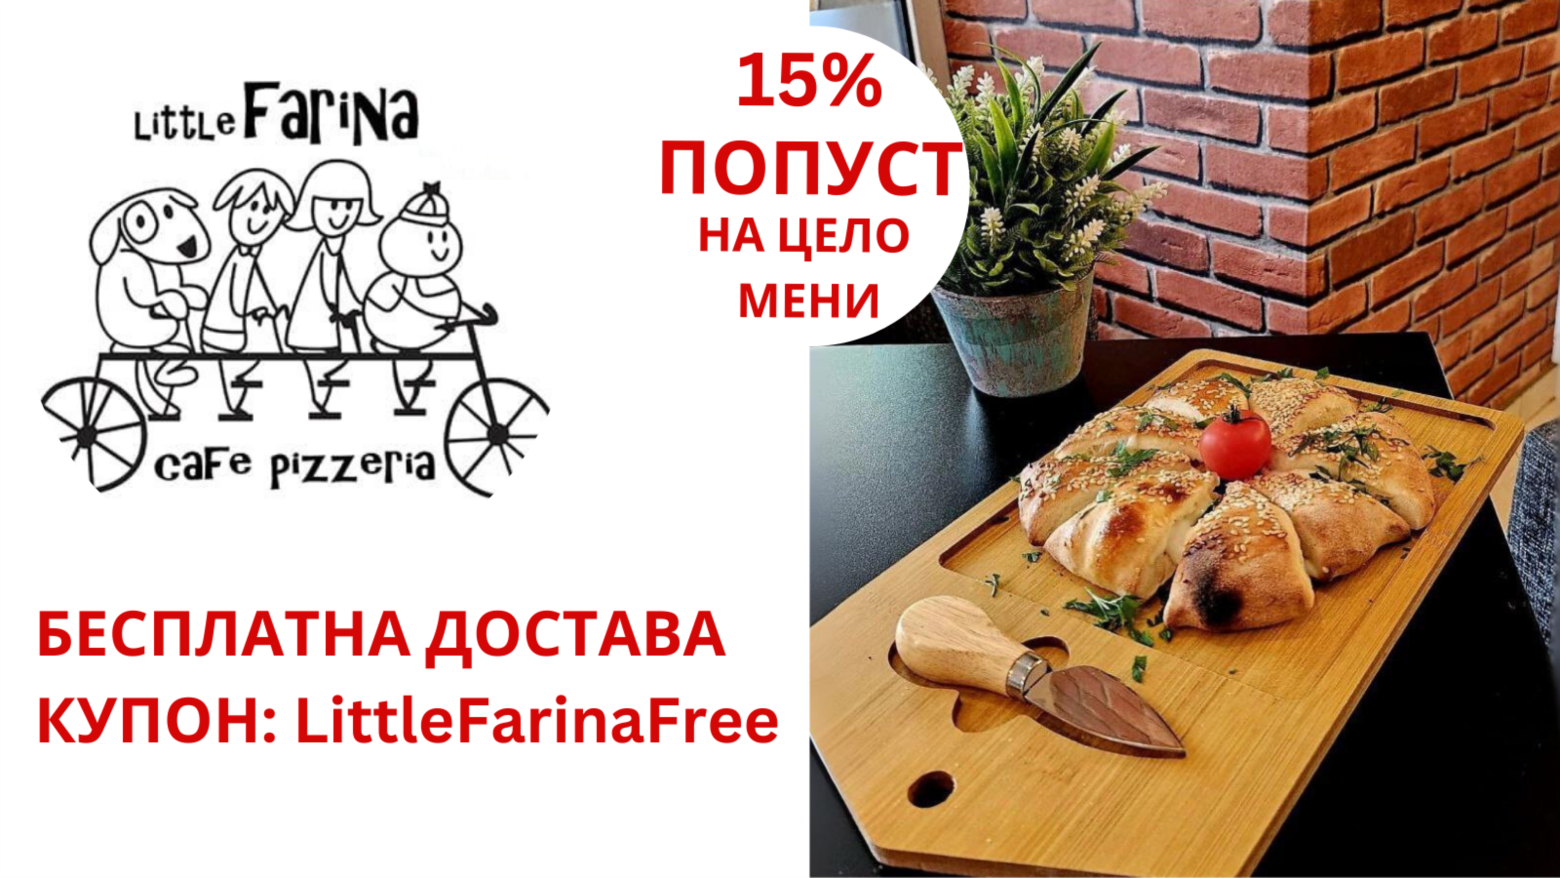 Little Farina 15%